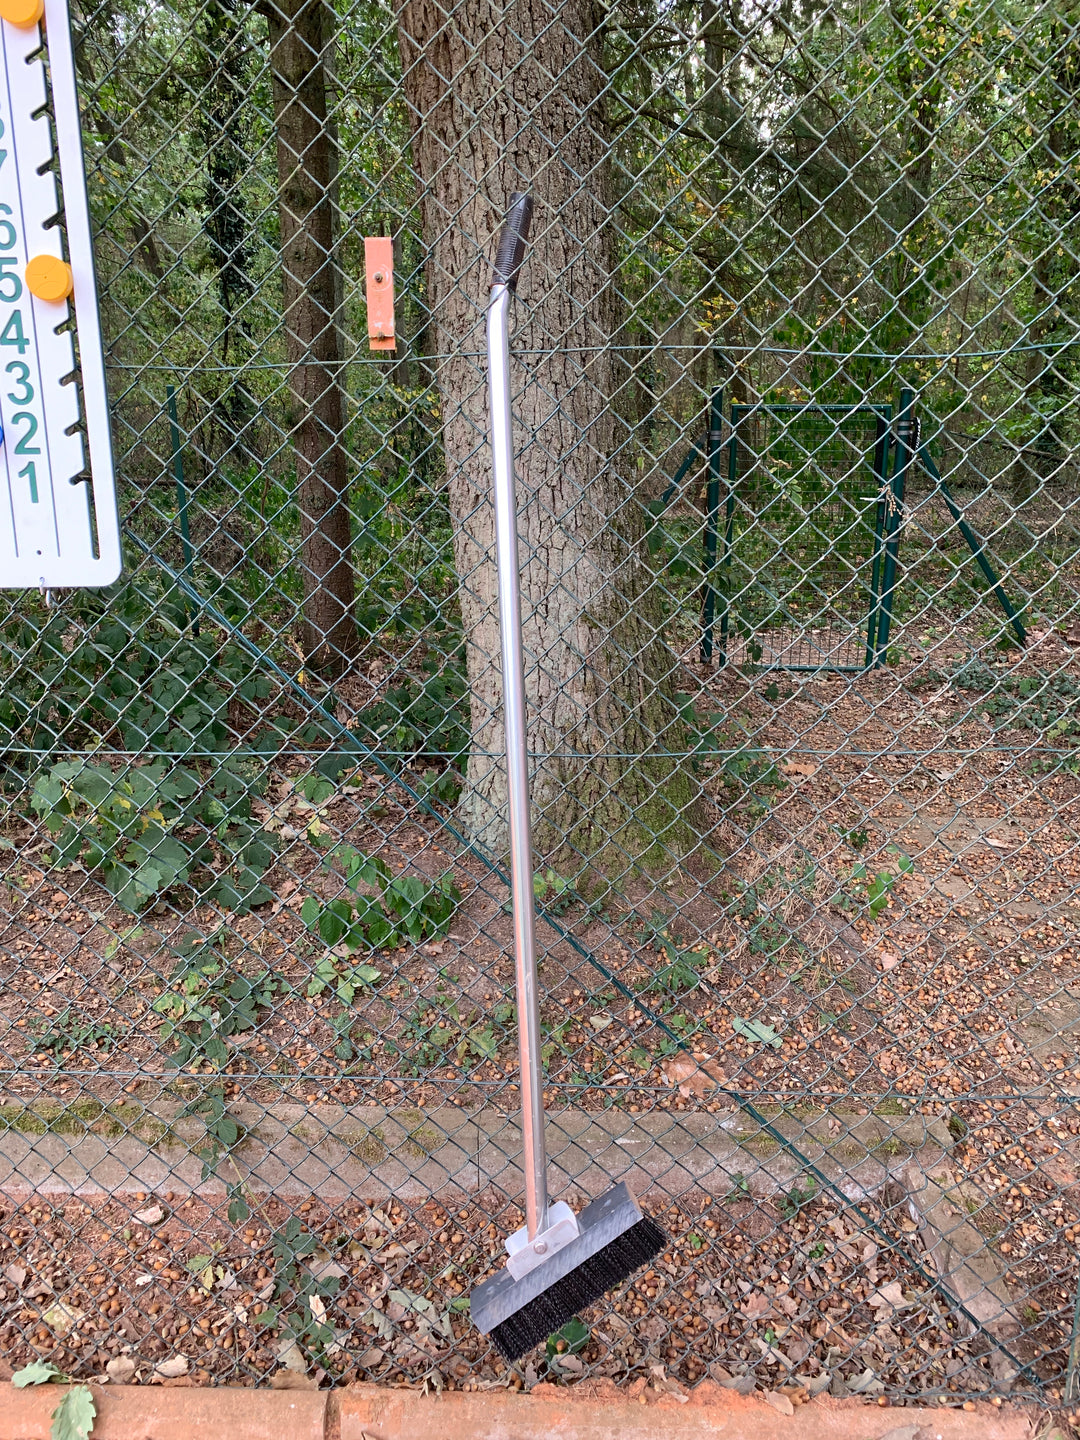 Linienbürste mit Gelenk sauber im Zaun aufgehängt.